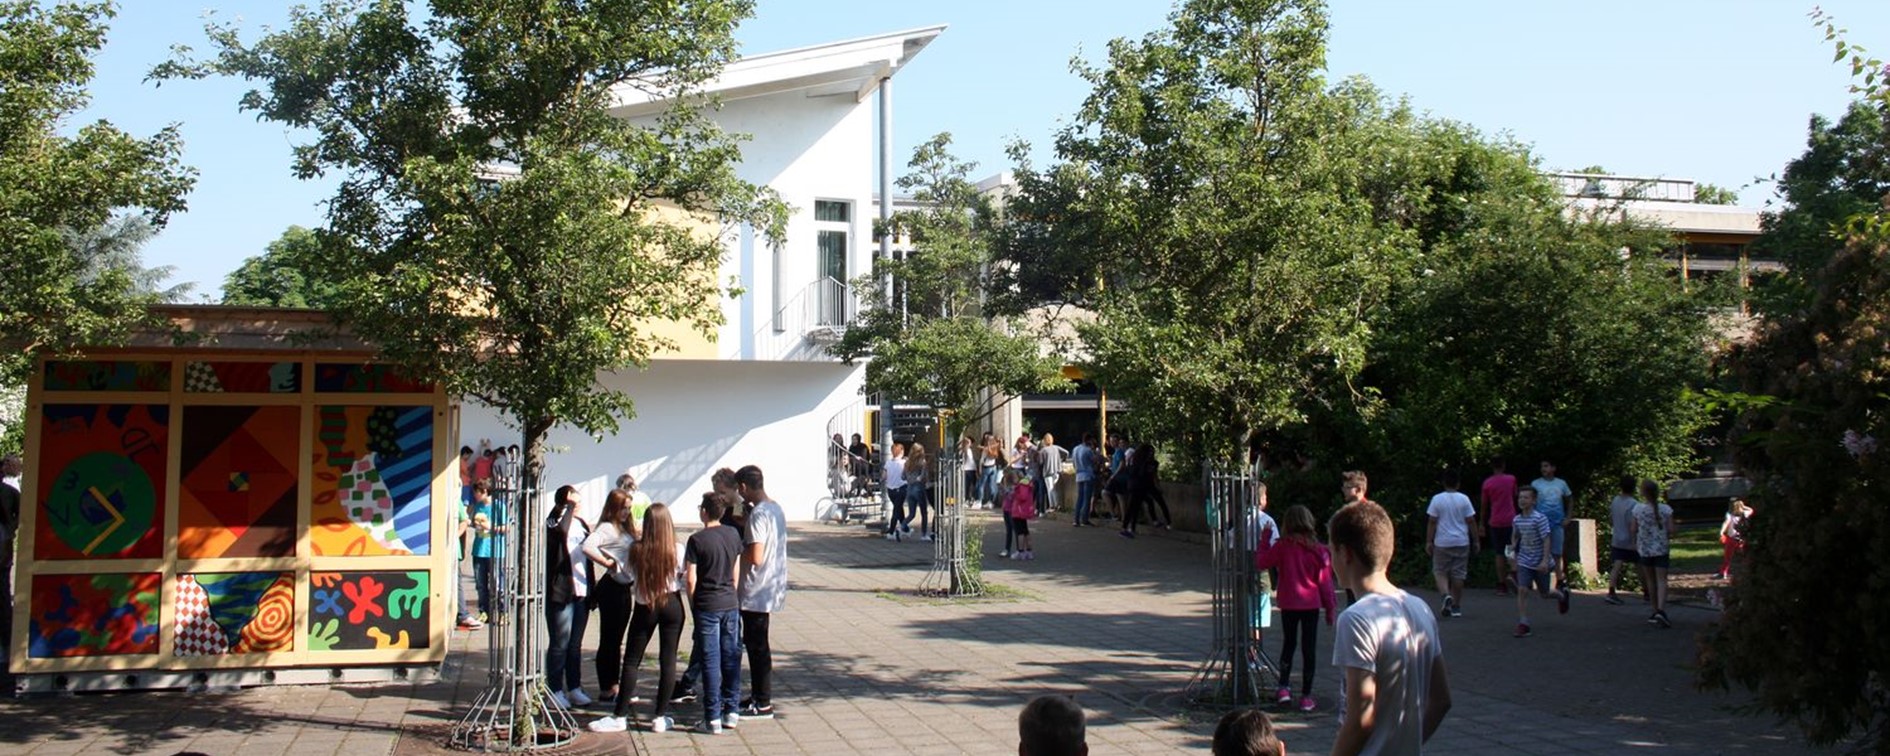 Schulhof der Theodor-Heuss-Realschule